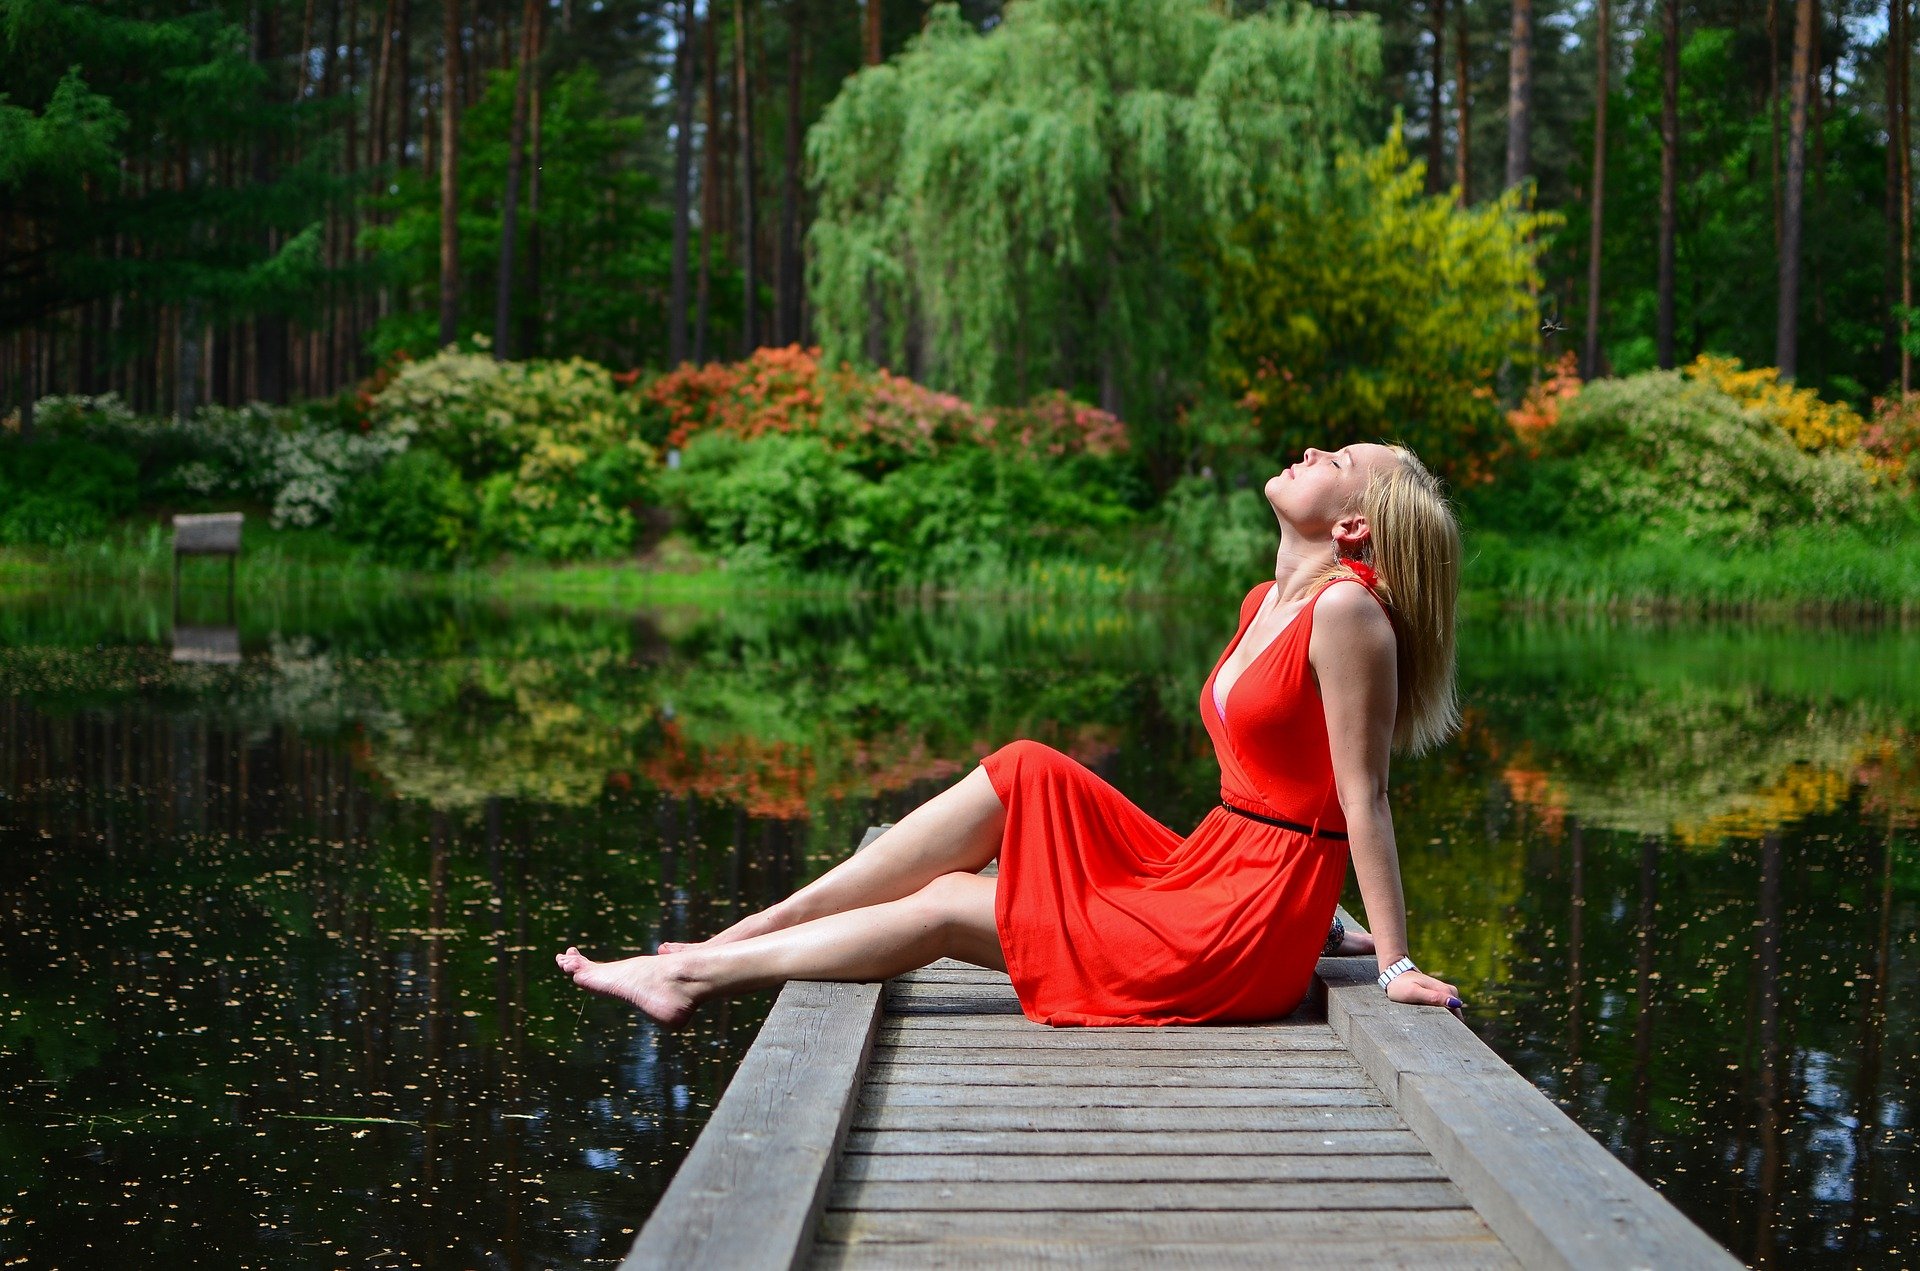 Woman sitting amongst nature